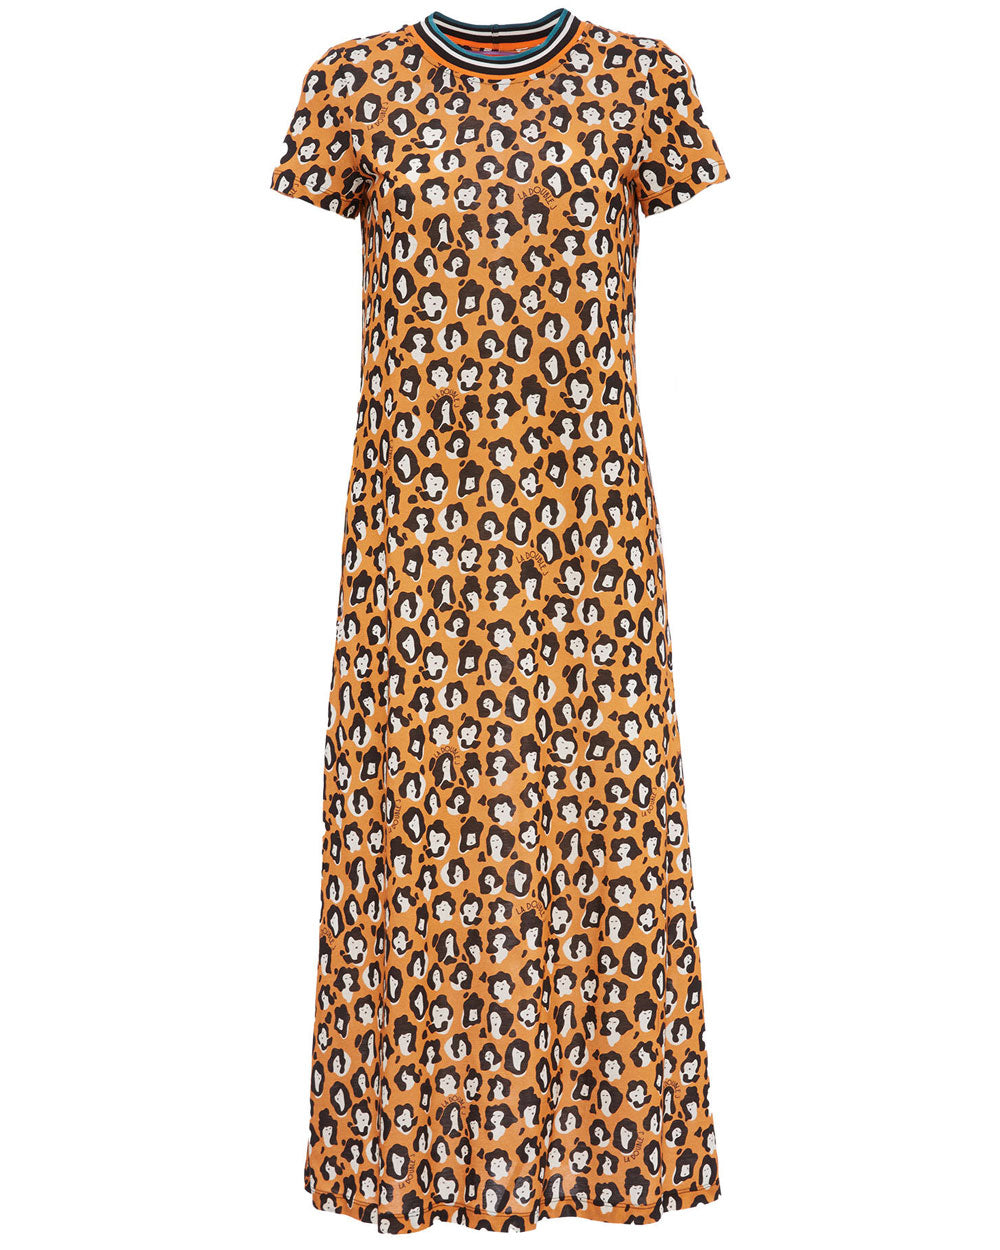 Lady Leopard Sporty Swing Dress in Cotton Jersey